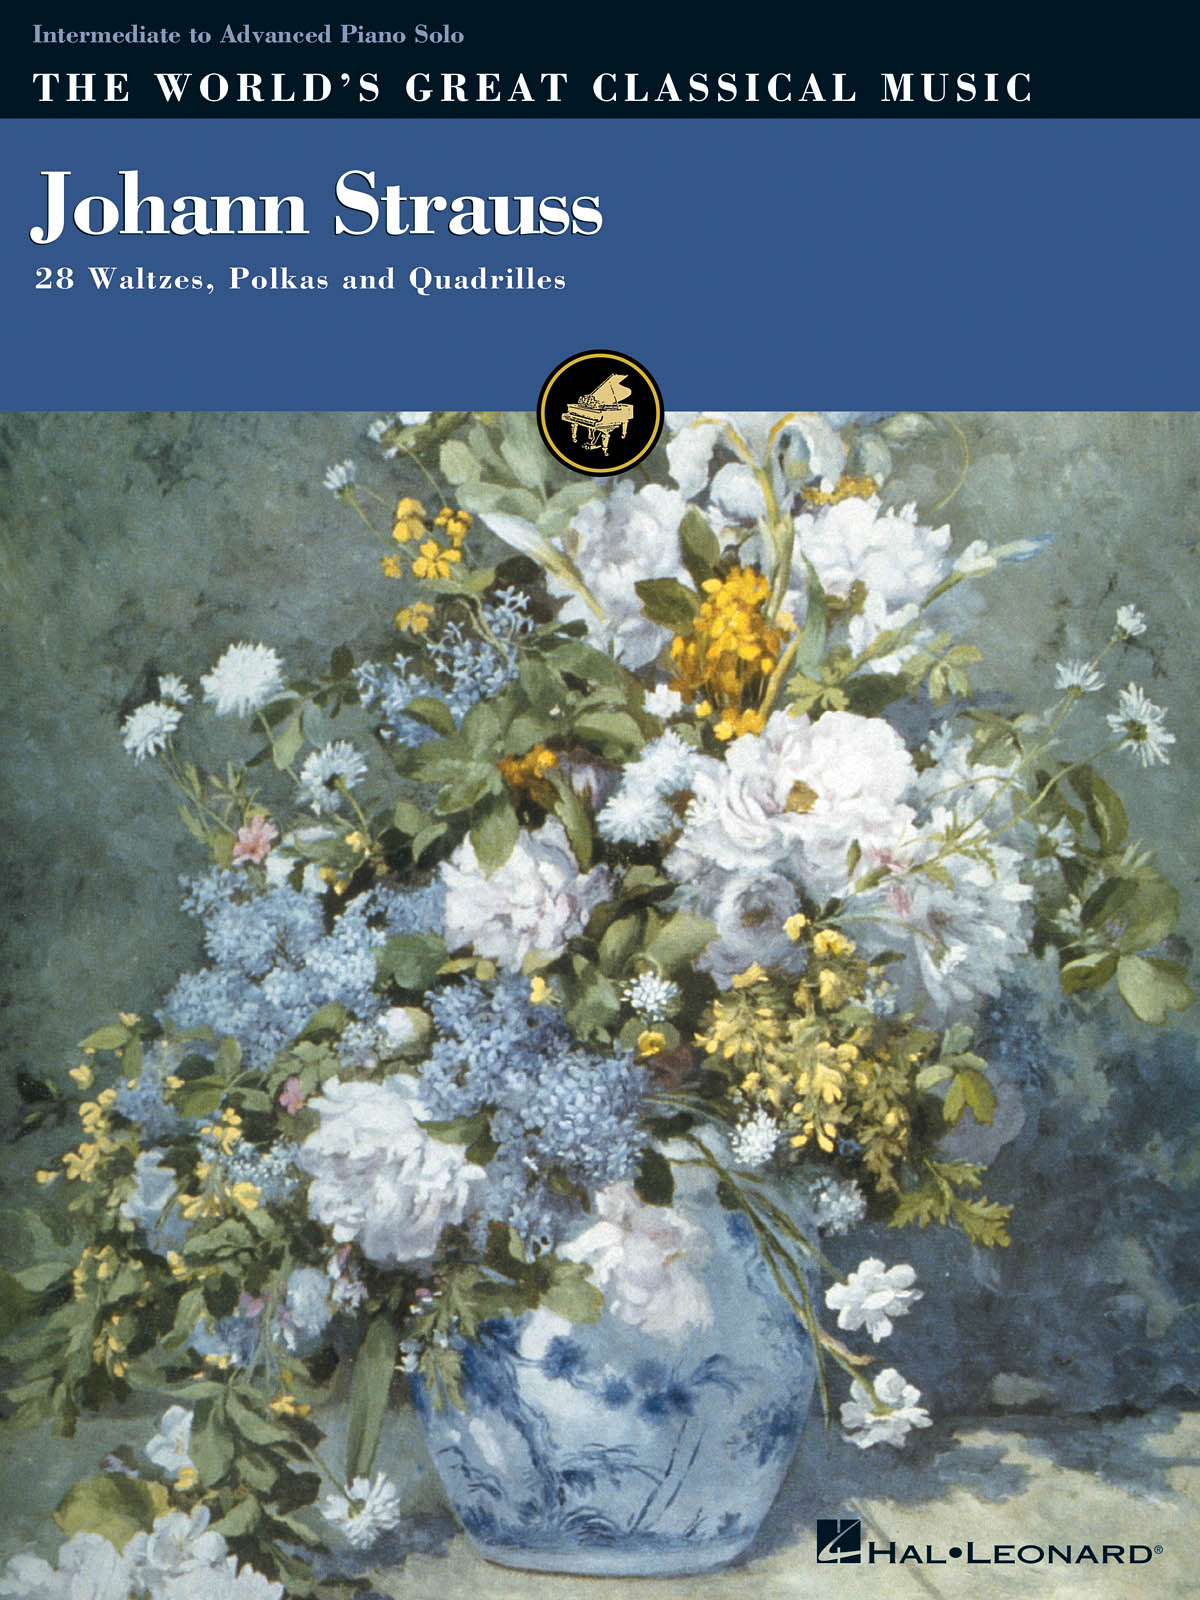 Johan Strauss